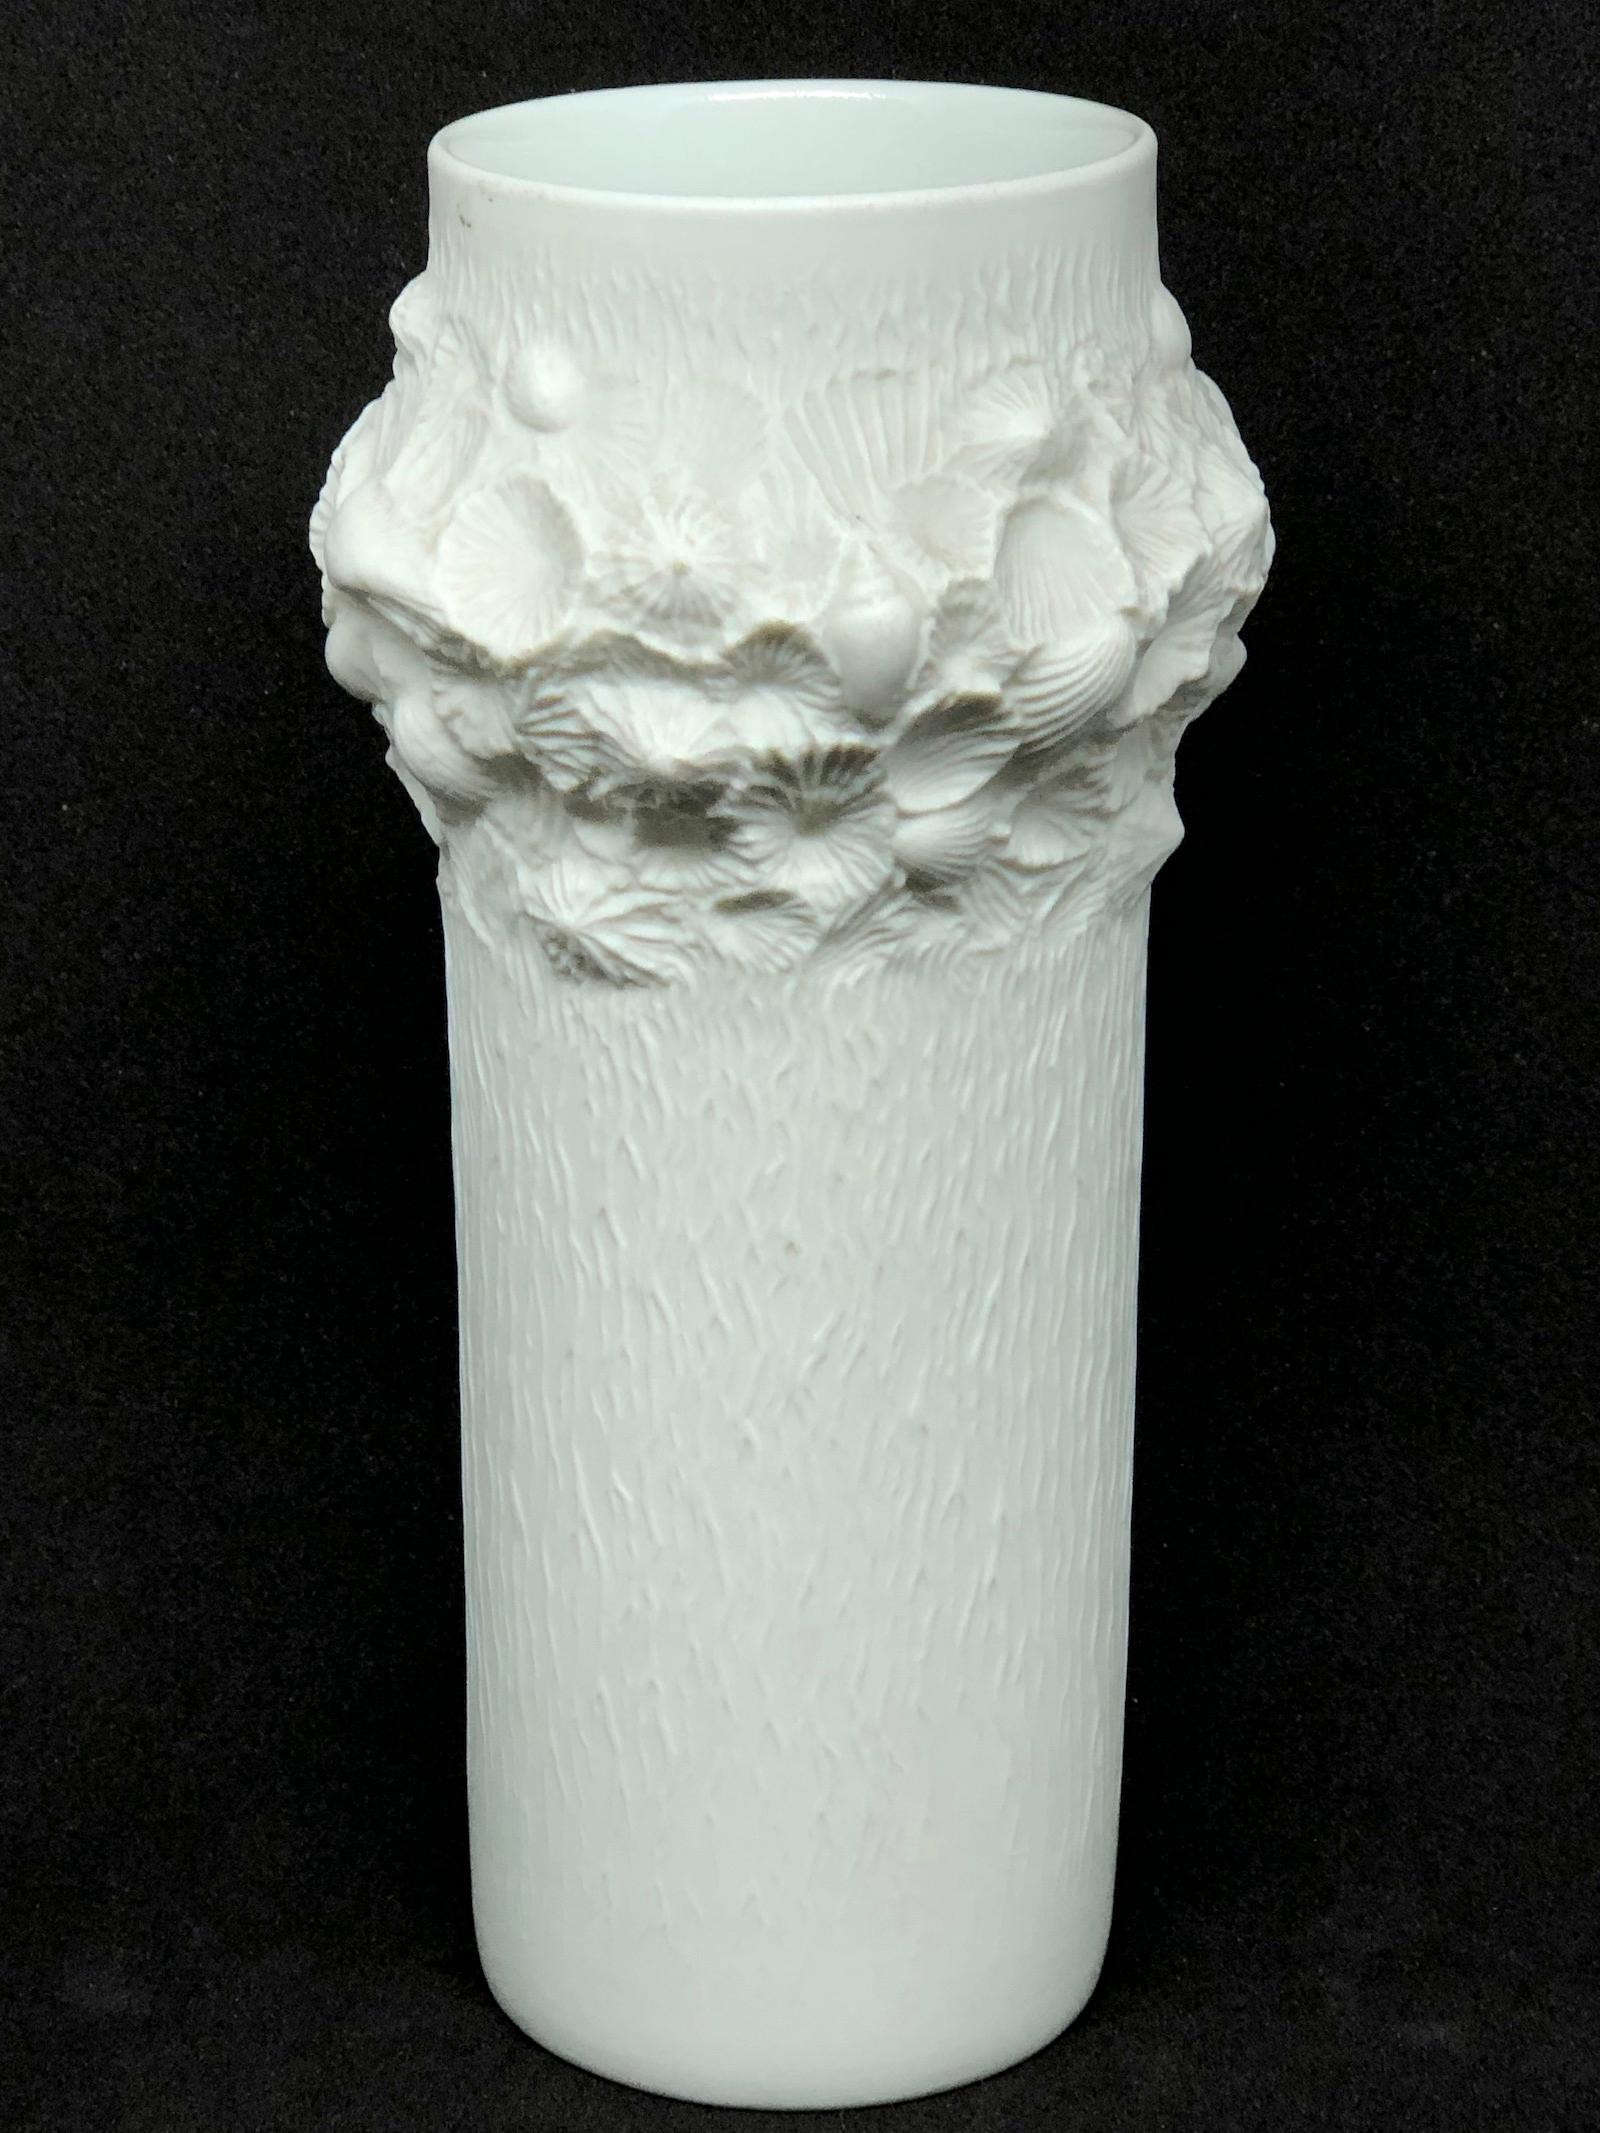 Un étonnant vase en porcelaine bisque de style studio du milieu du siècle dernier, fabriqué en Allemagne par Kaiser Porcelain, vers les années 1970. Le vase est en très bon état, sans éclats, ni fissures, ni morsures de puces. Signé avec la marque